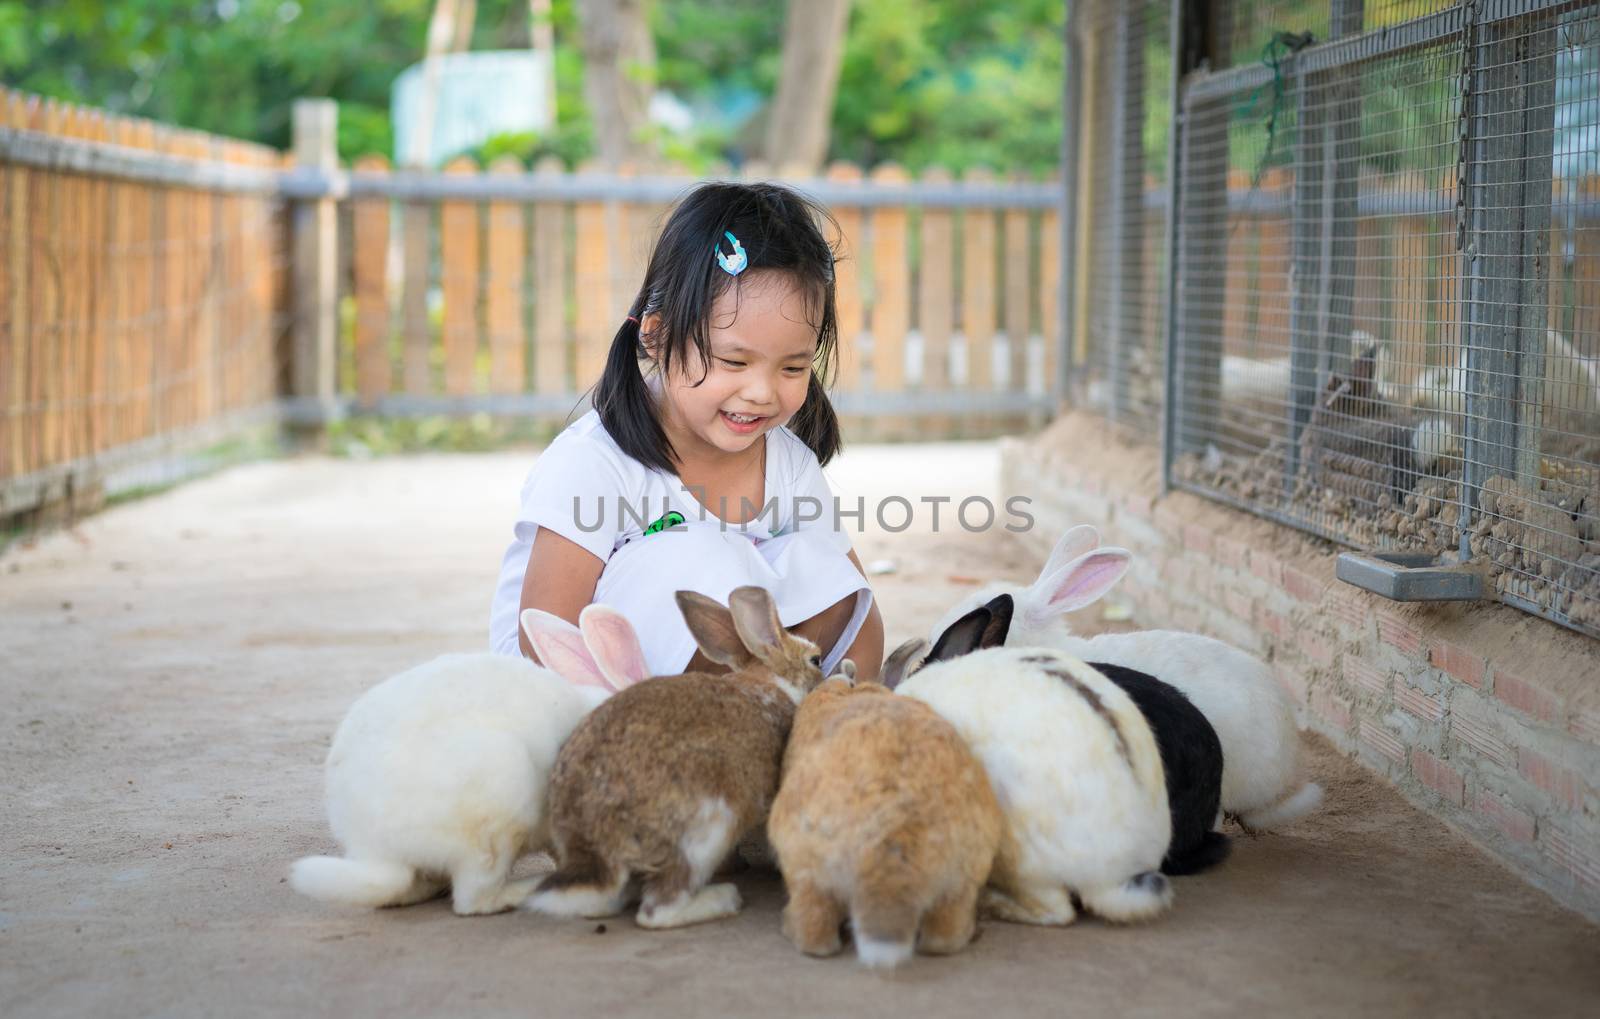 Cute little girl feeding rabbit on the farm by domonite